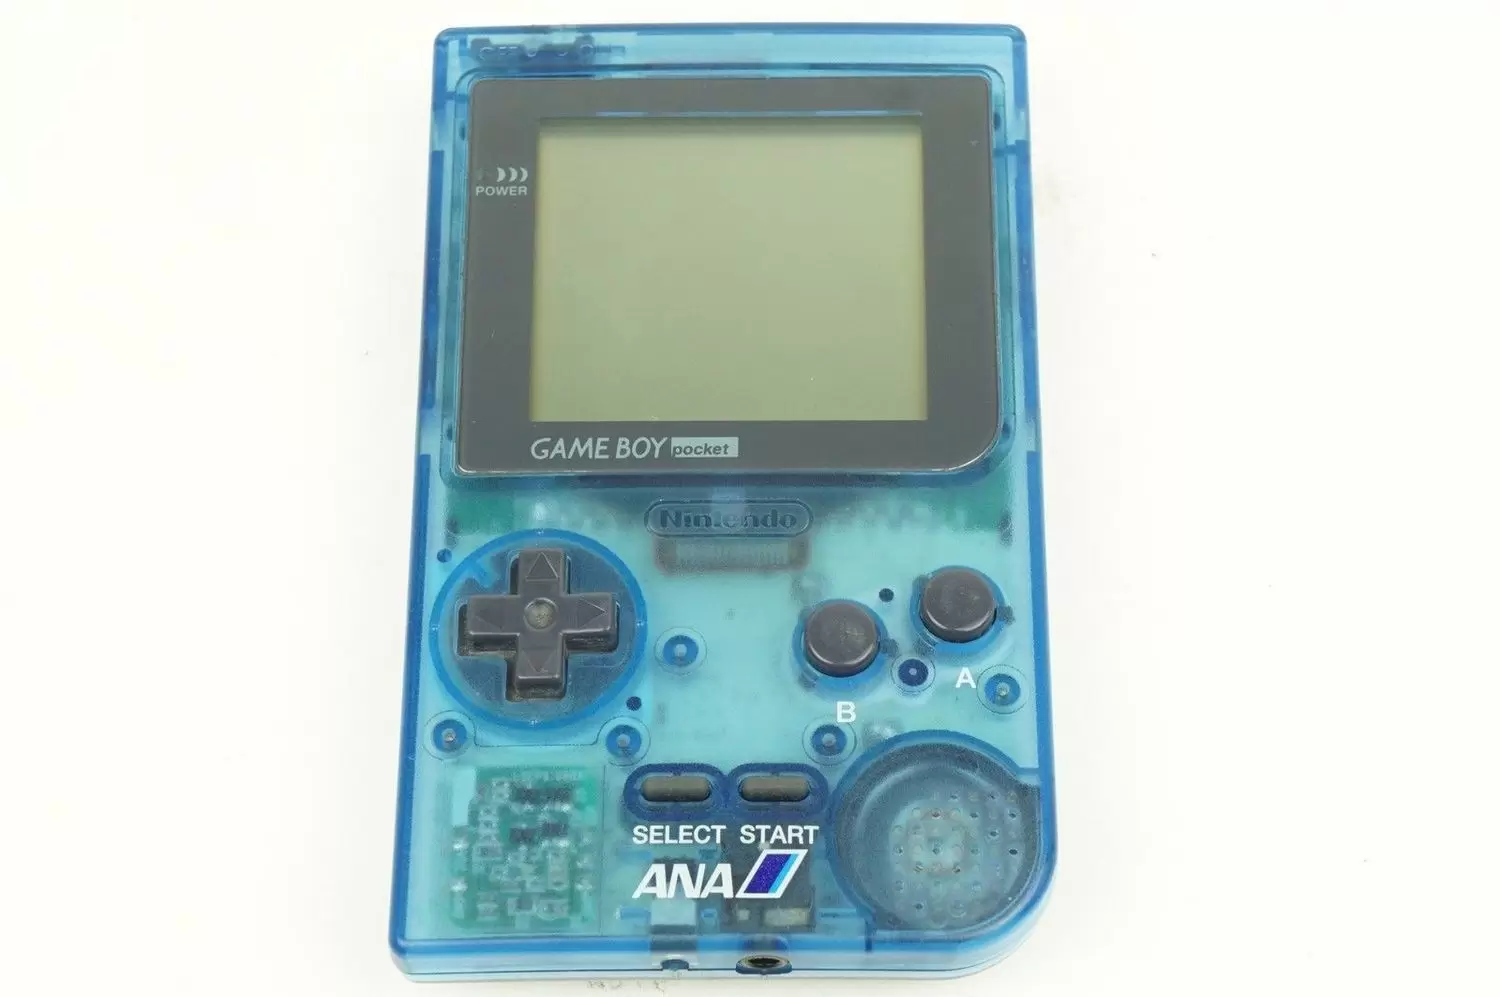 Game Boy Pocket - Game Boy Pocket ANA Airline